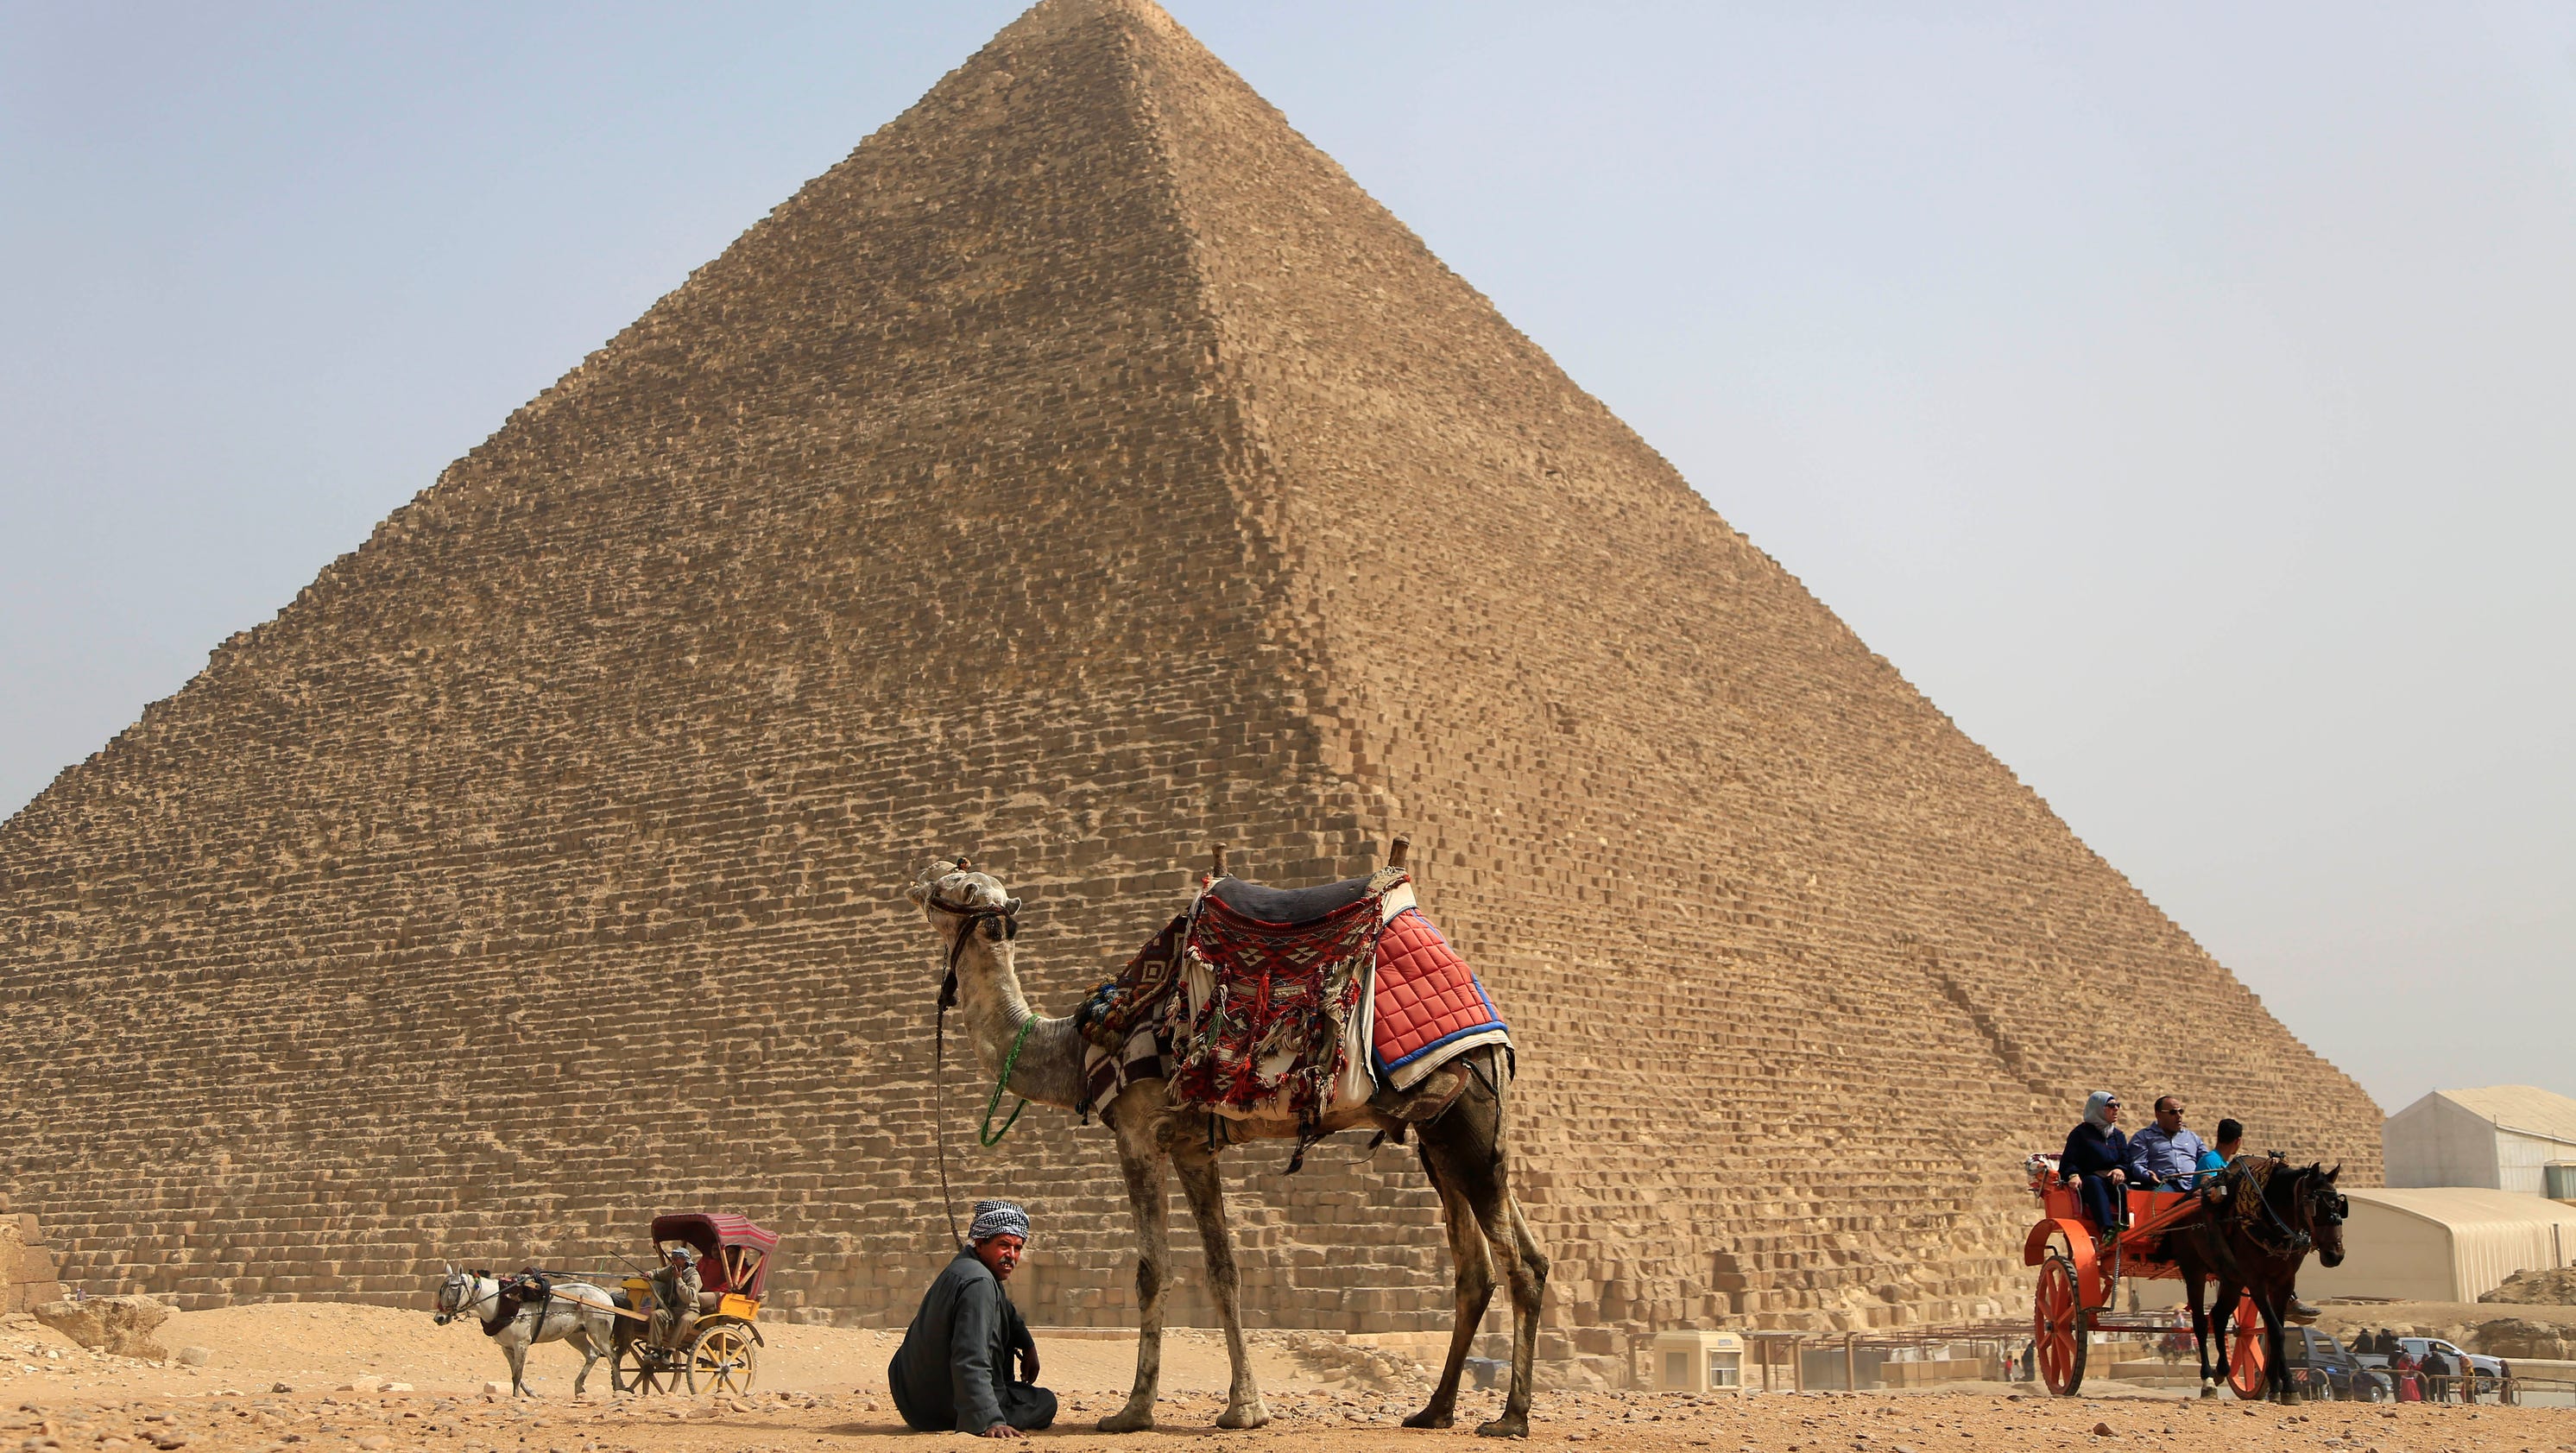 Egyptians' pyramid construction secret revealed